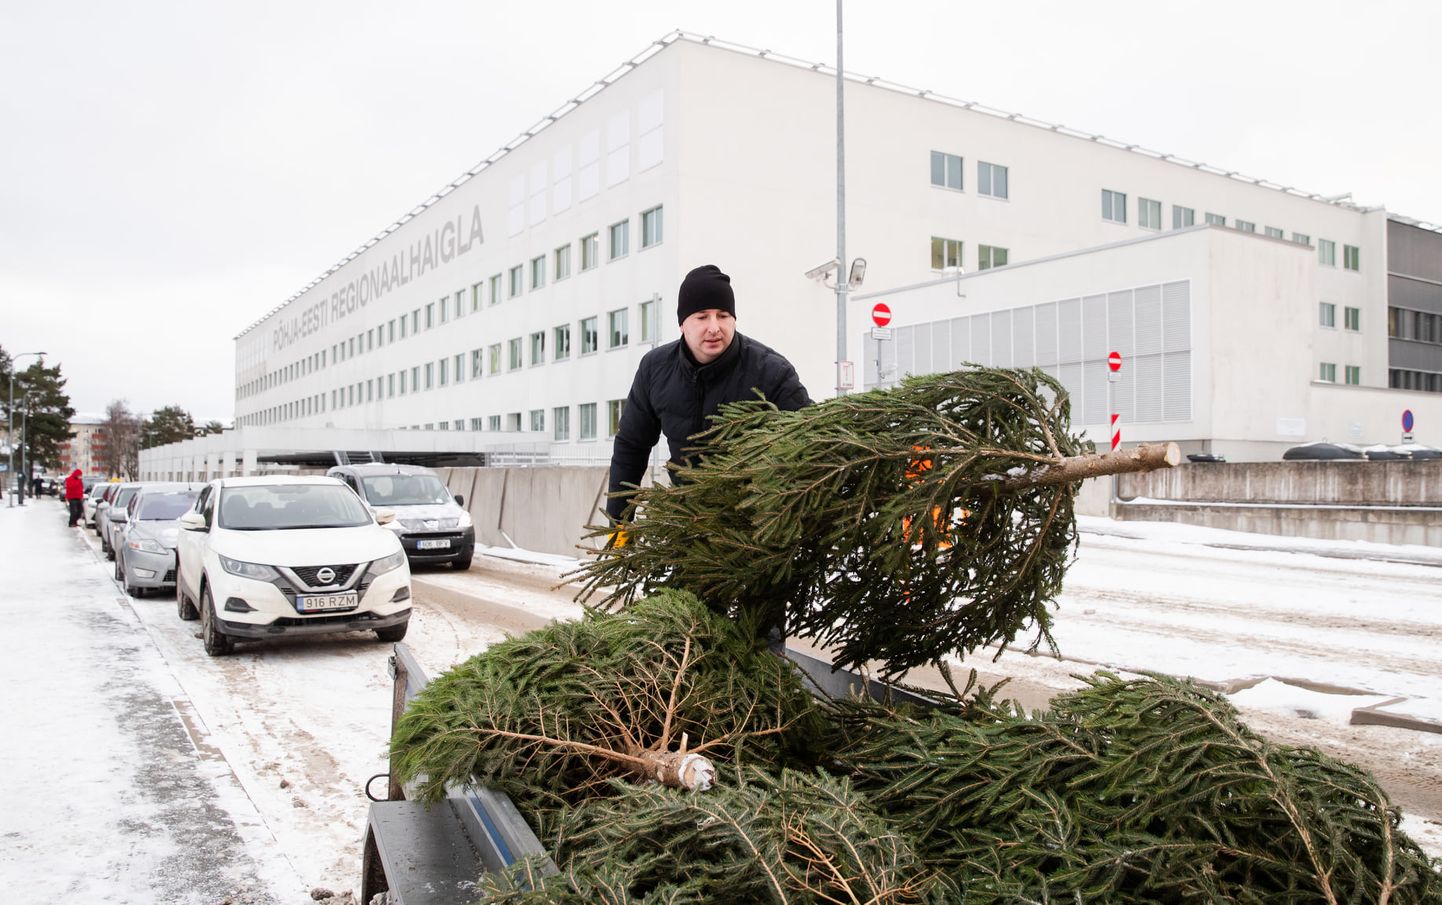 RMK kinkis jõulude eel 106 kuuske erinevatele haiglatele üle Eesti, et tänada ja tunnustada meditsiinitöötajaid ning tuua rõõmu ka patsientidele.